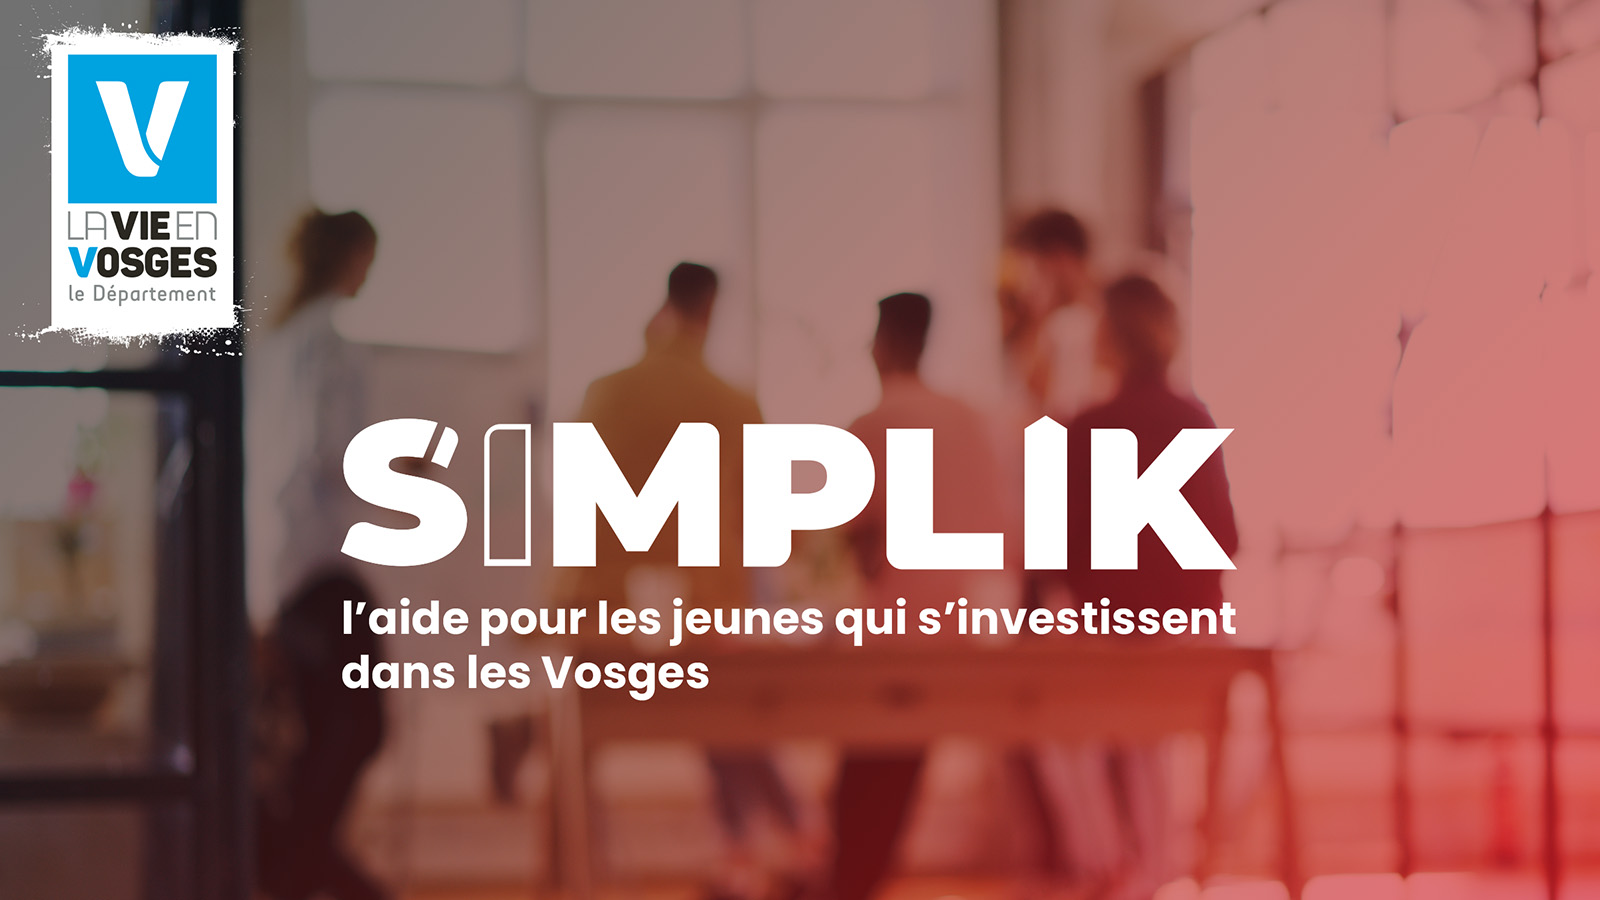 S'IMPLIK, un nouveau dispositif pour les Jeunes dans les Vosges 